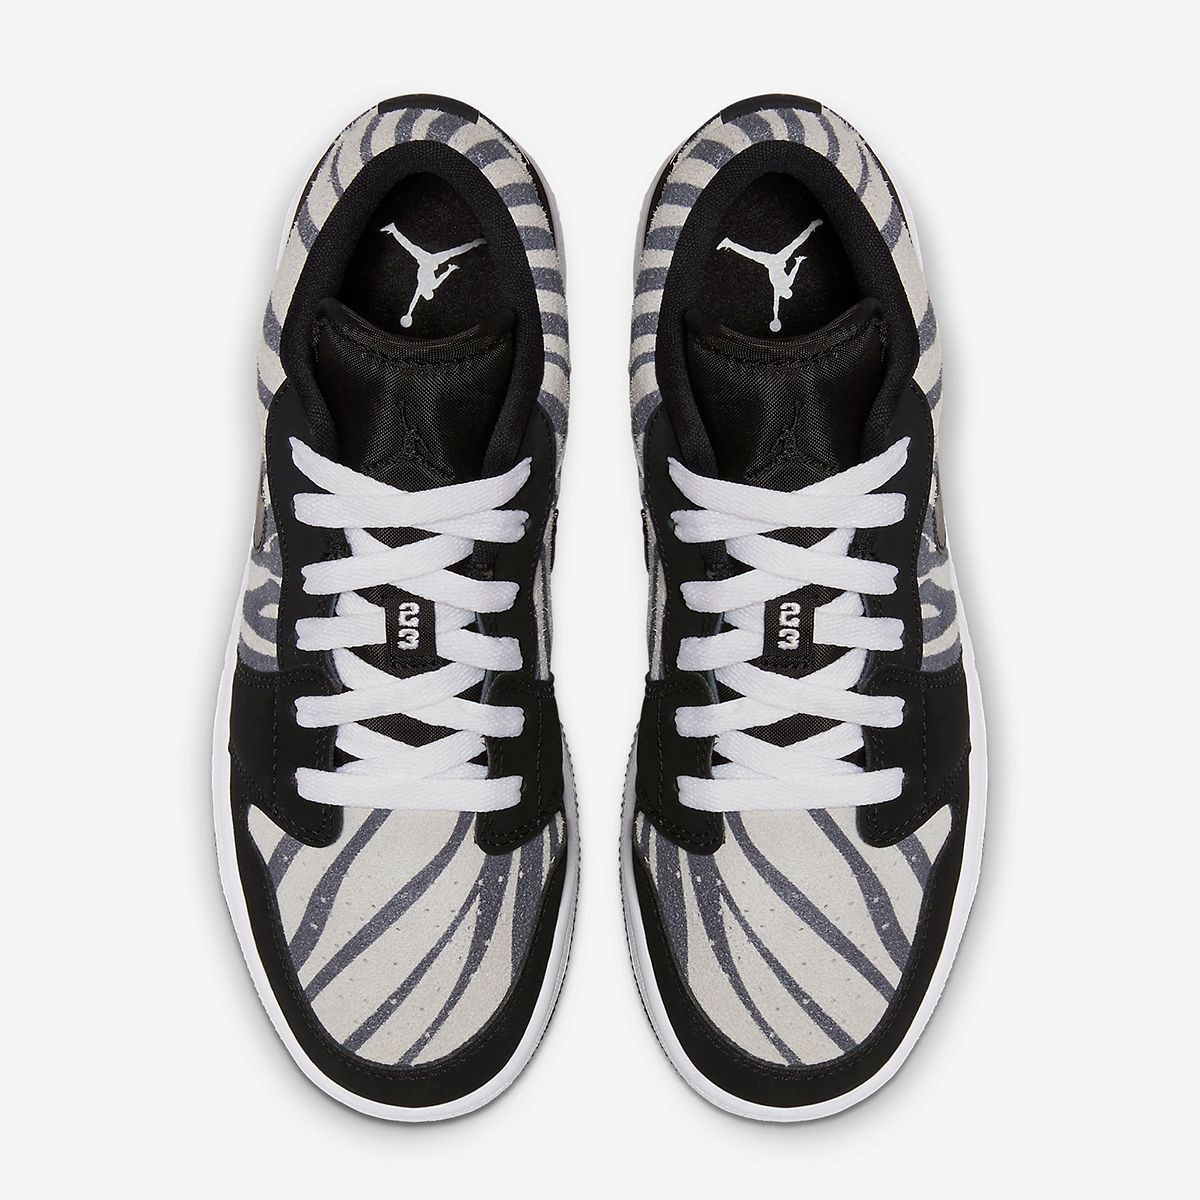 Air Jordan 1 Low “Zebra” Set For September Release | House of Heat°